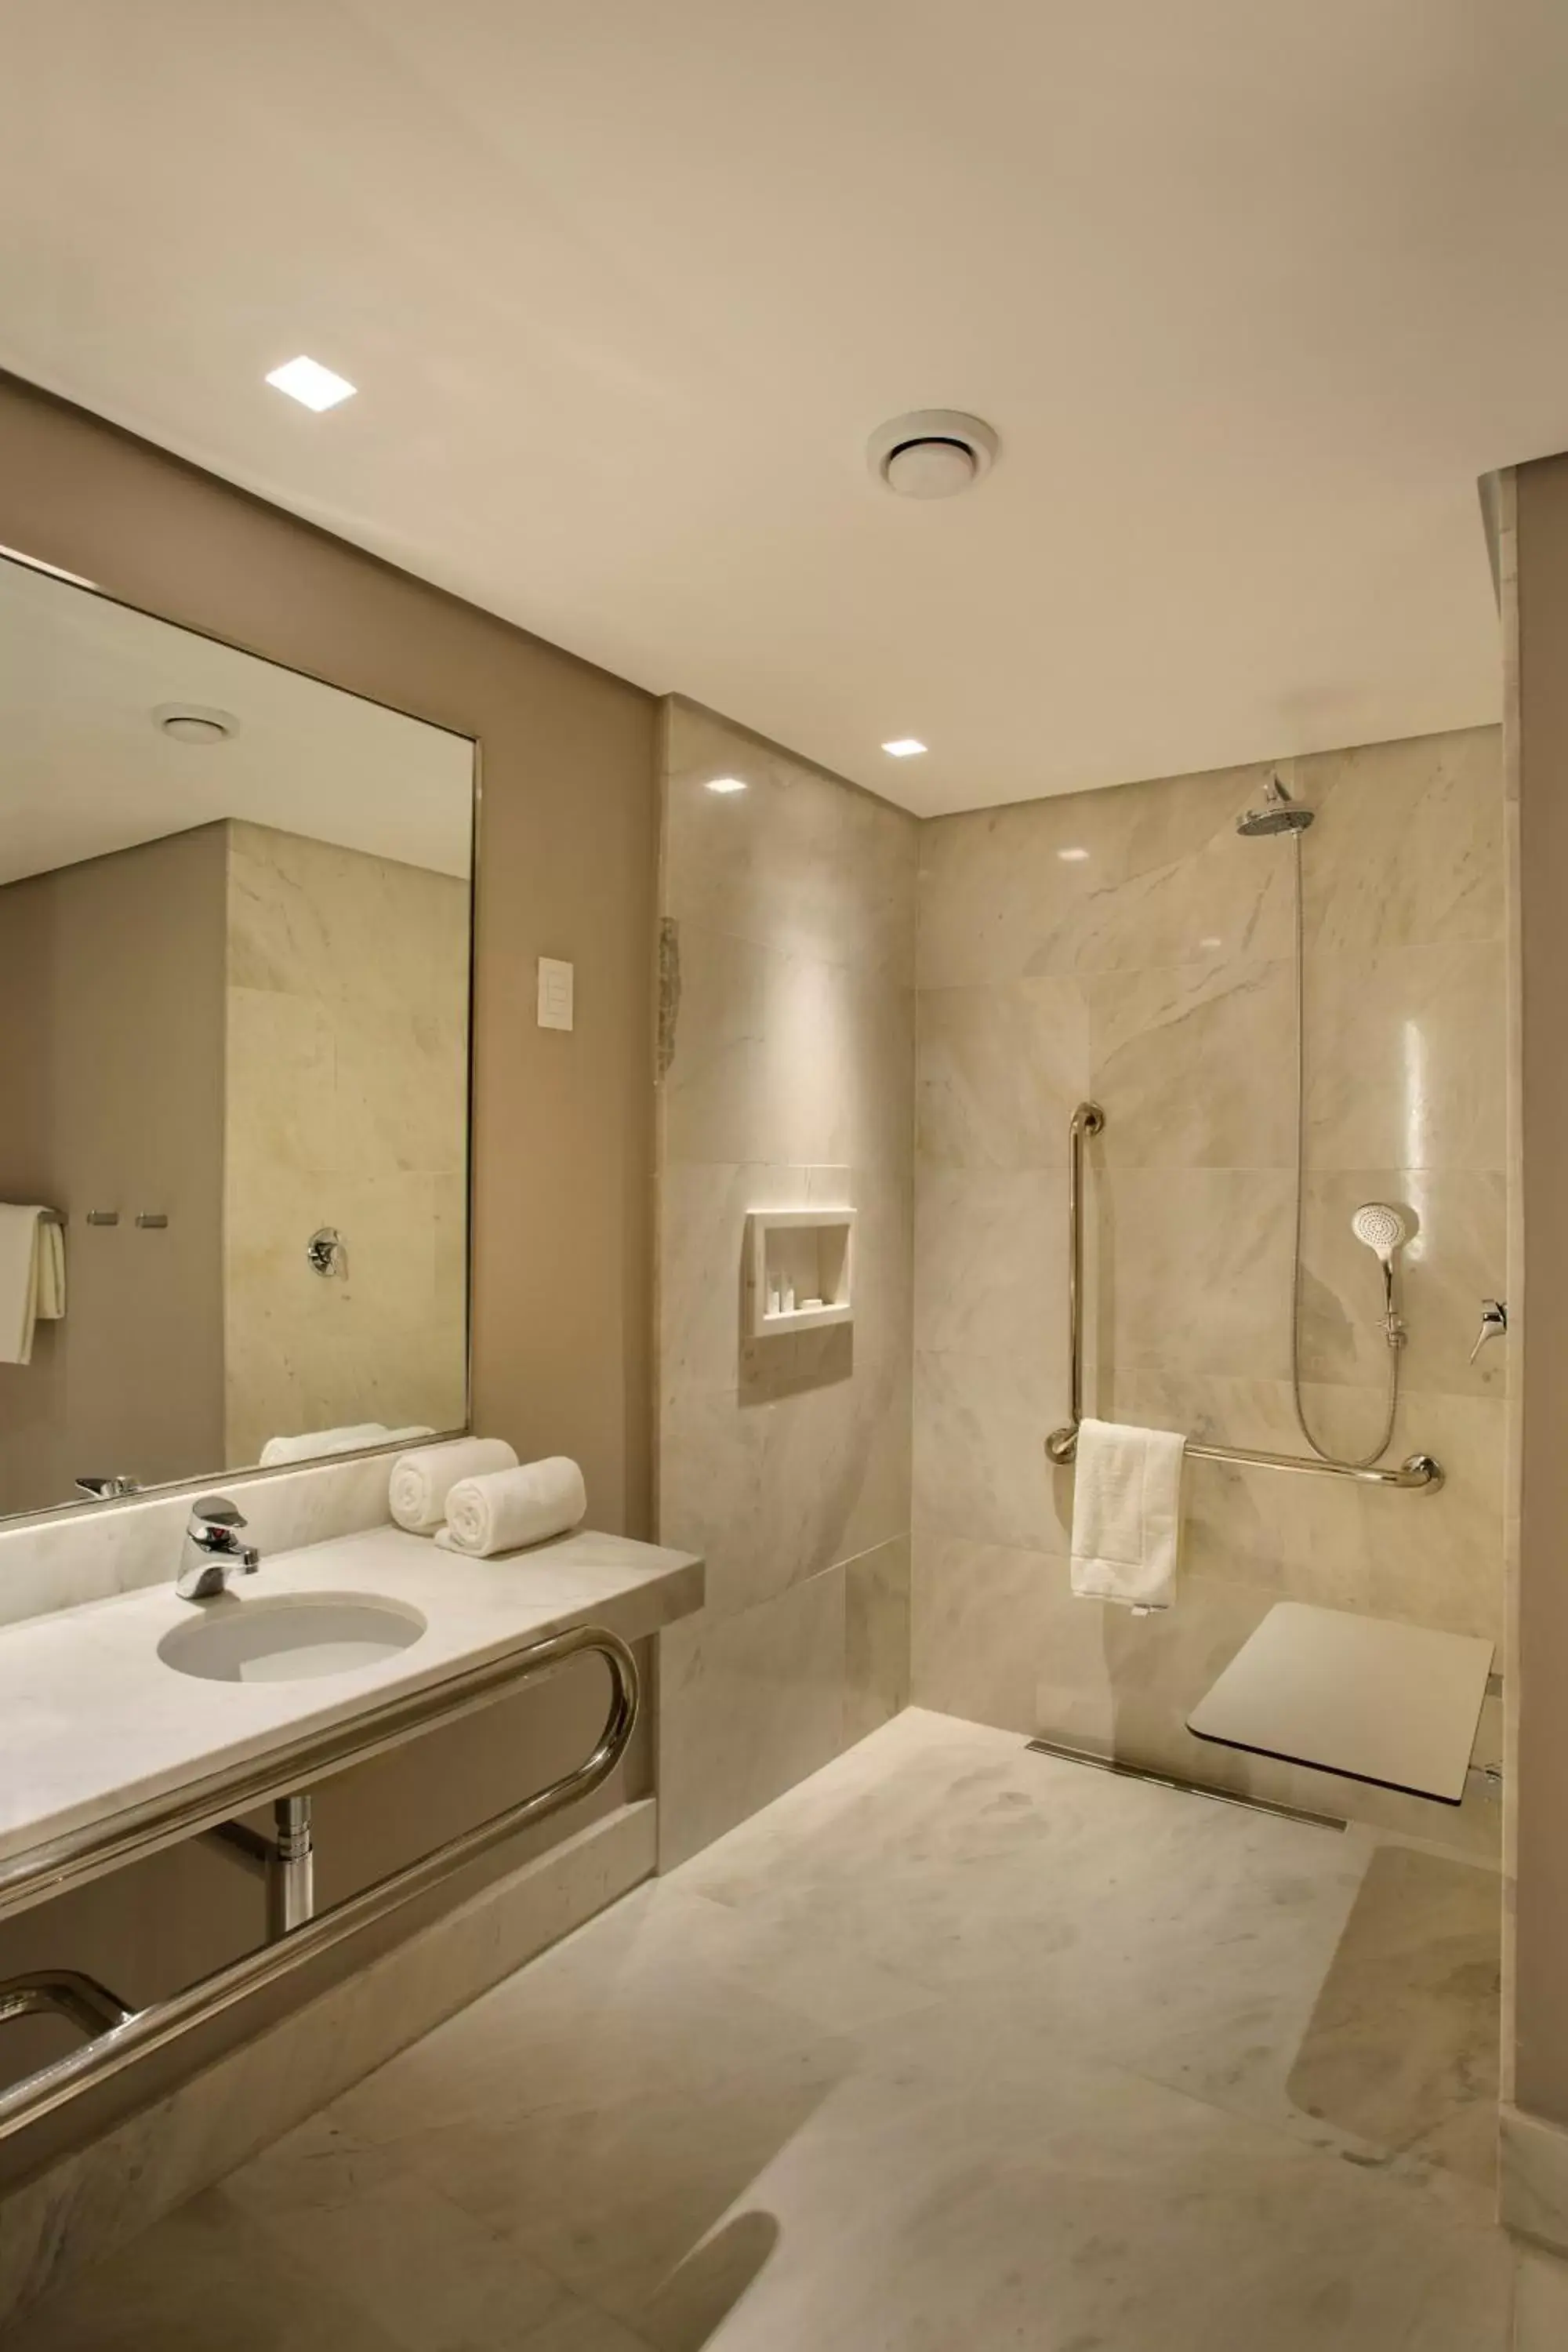 Property building, Bathroom in Venit Mio Hotel